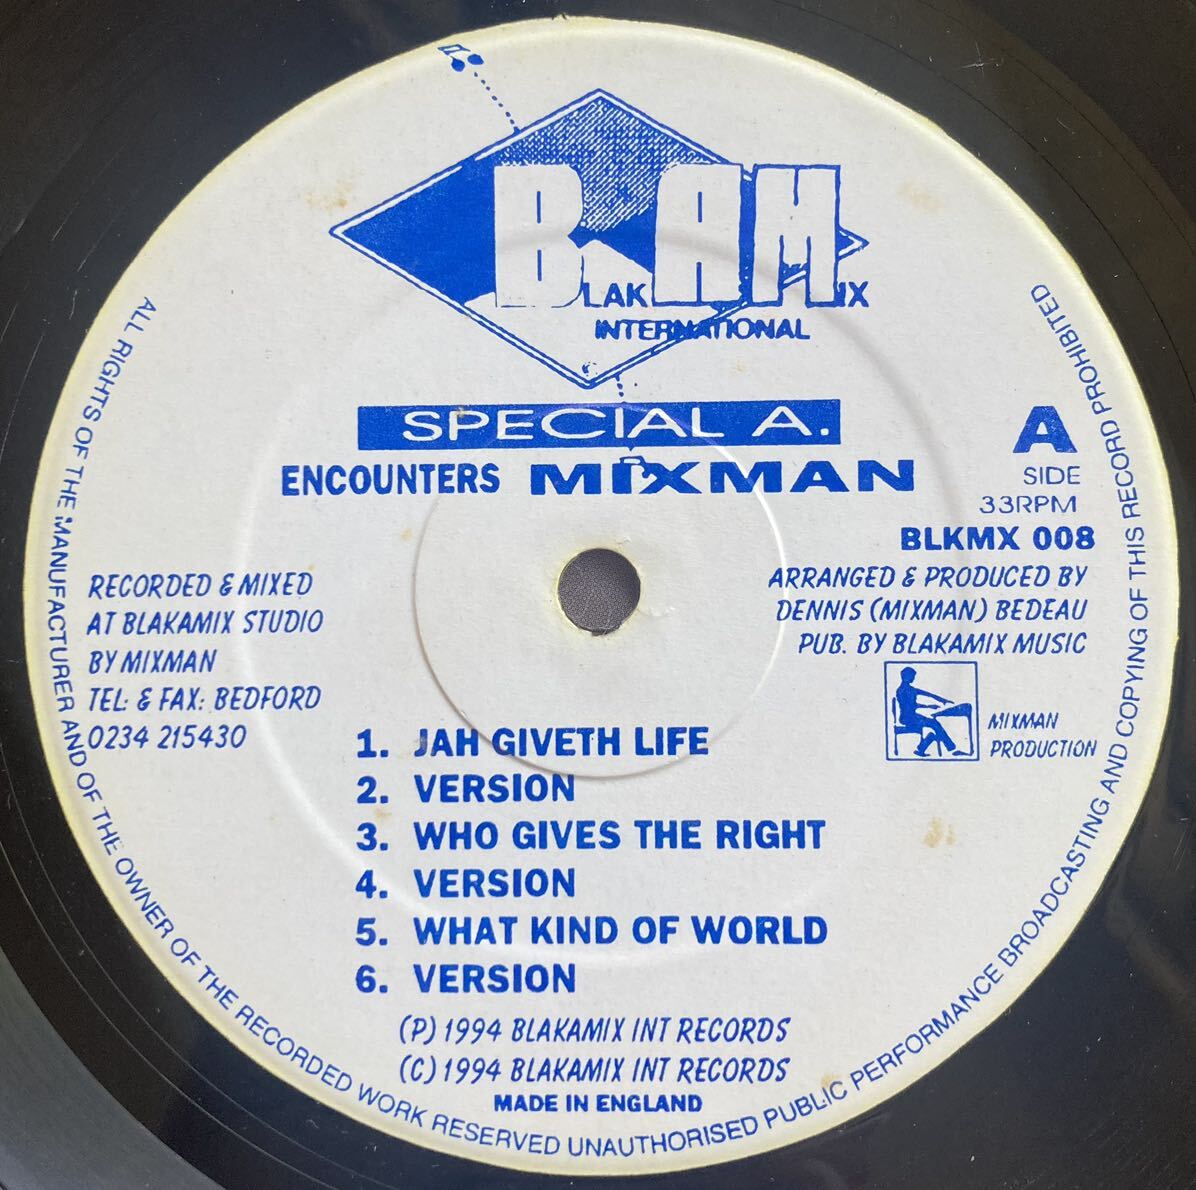 Special A. / Special A. Encounters Mixman ◎ Blakamix / 90’s Dub Classics _画像3